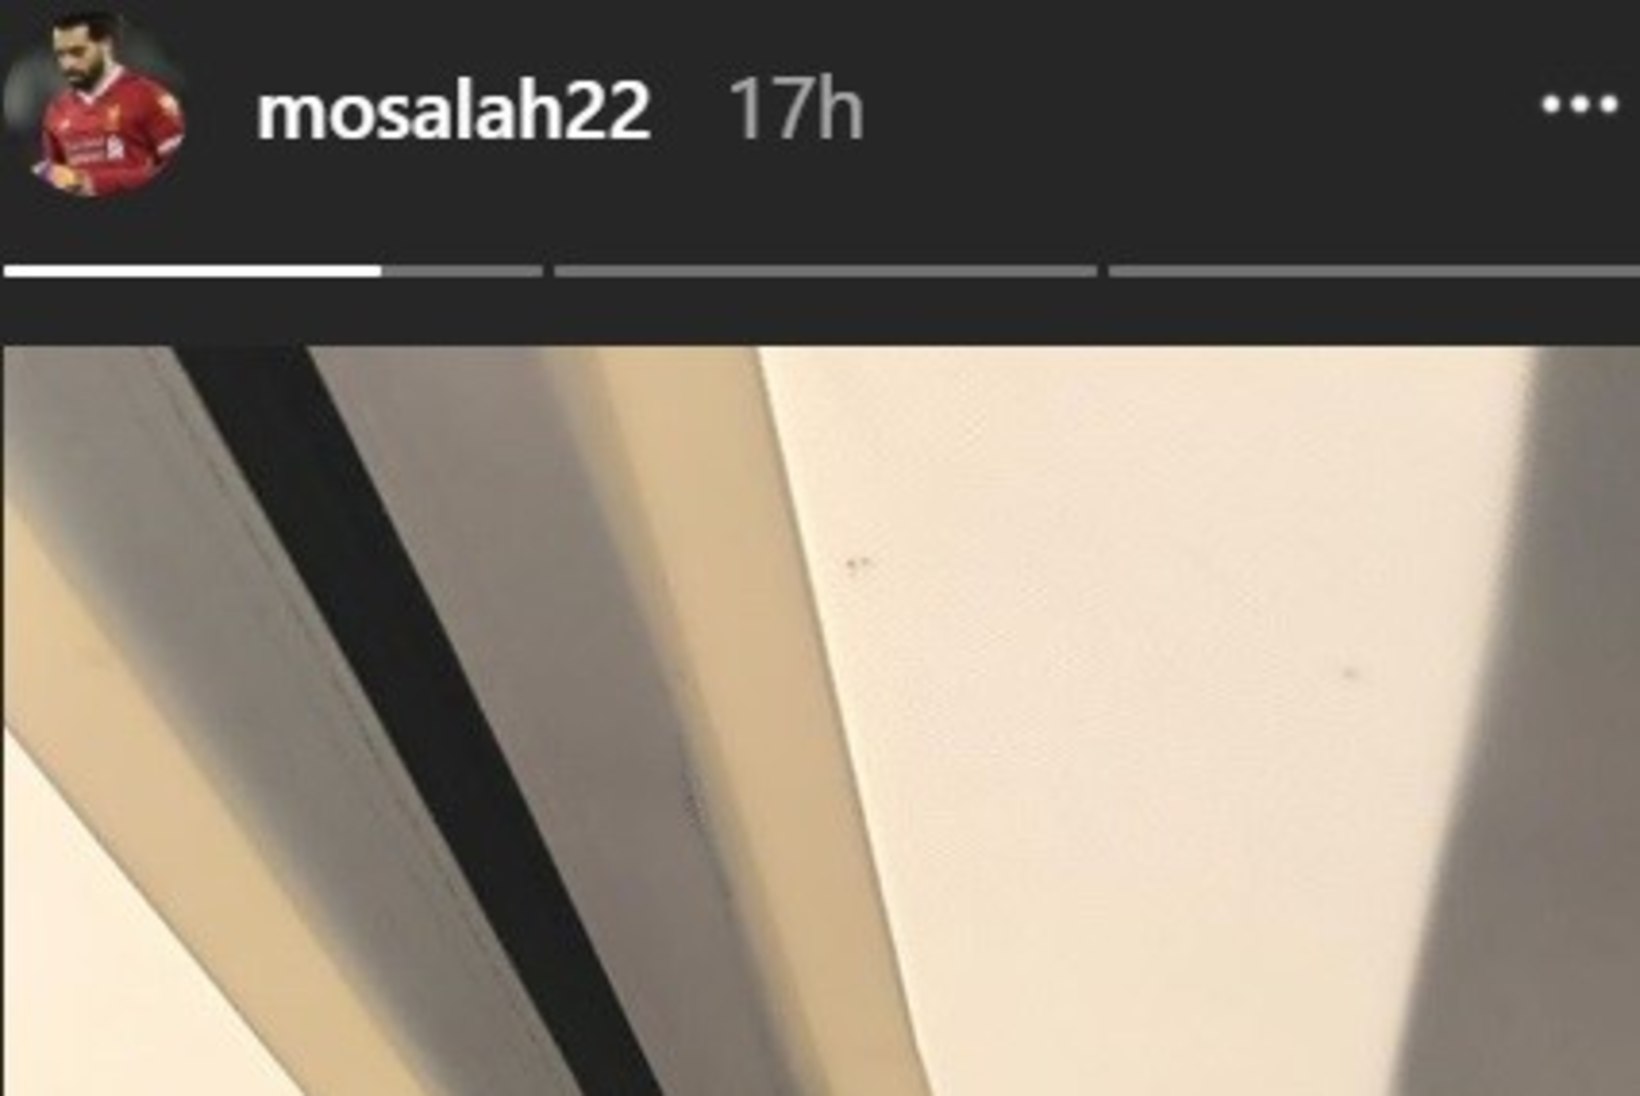 FOTO | Salah andis oma vigastuse kohta Liverpooli fännidele positiivse vihje